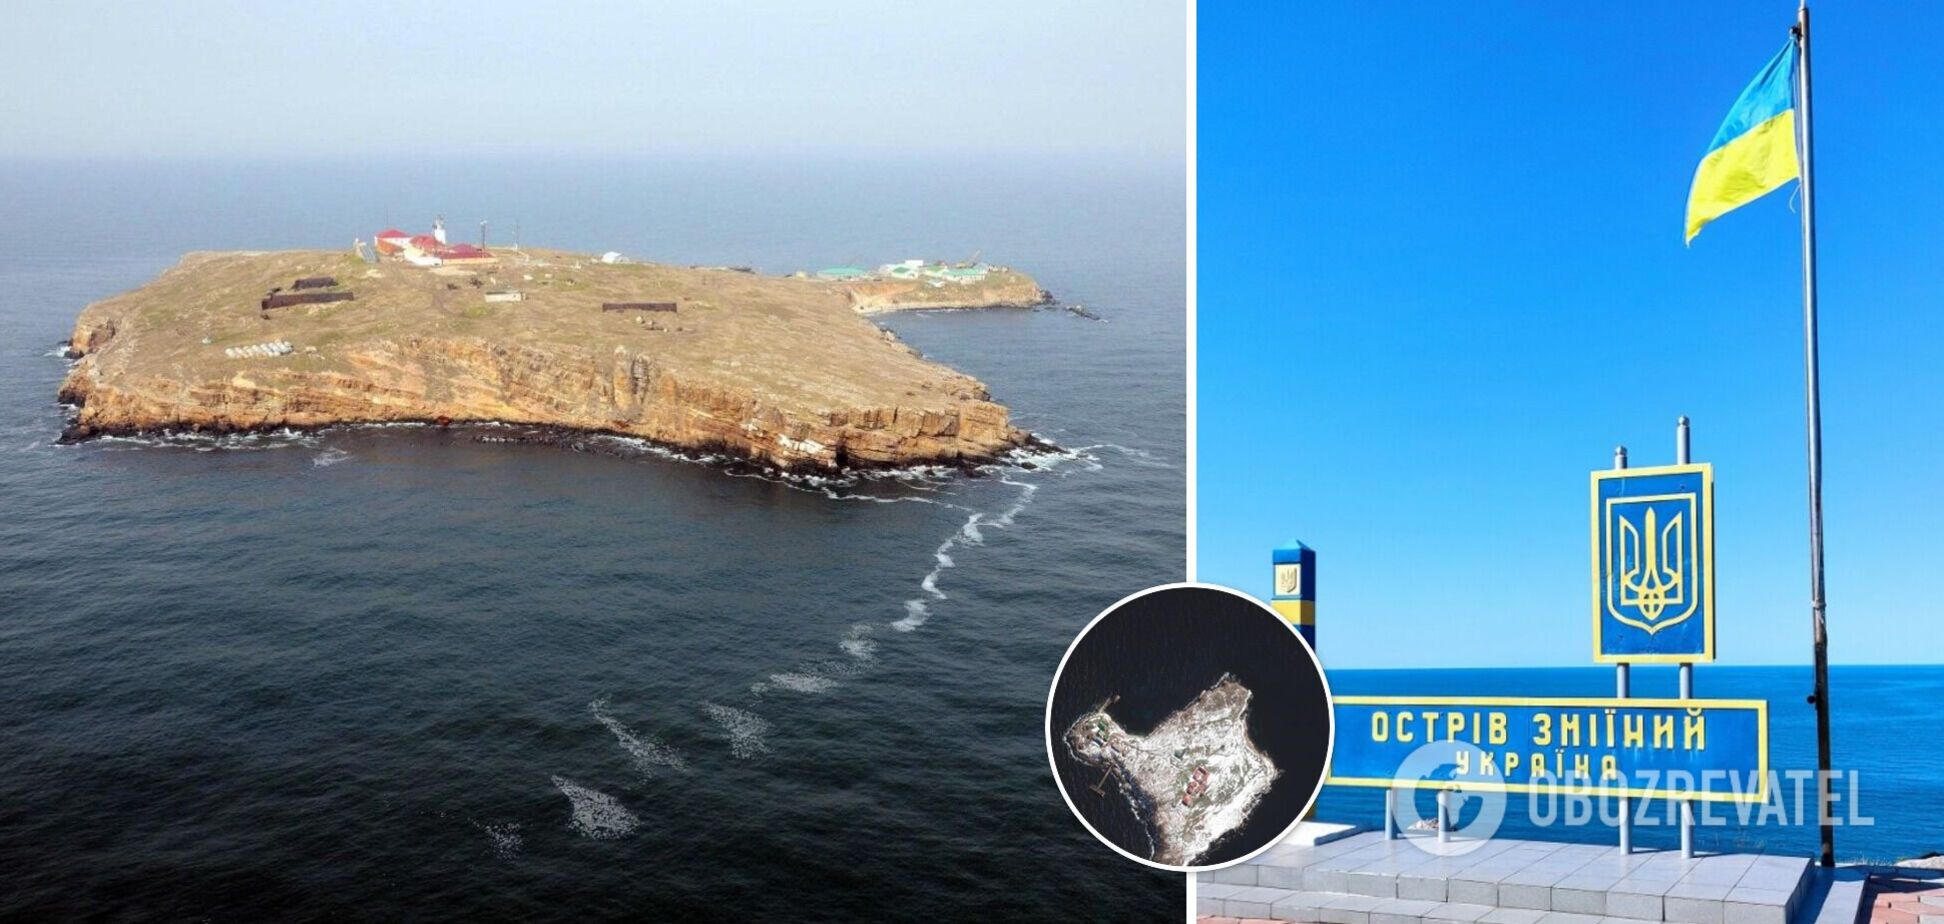 Появилось спутниковое фото острова Змеиный после бомбардировки российскими оккупантами